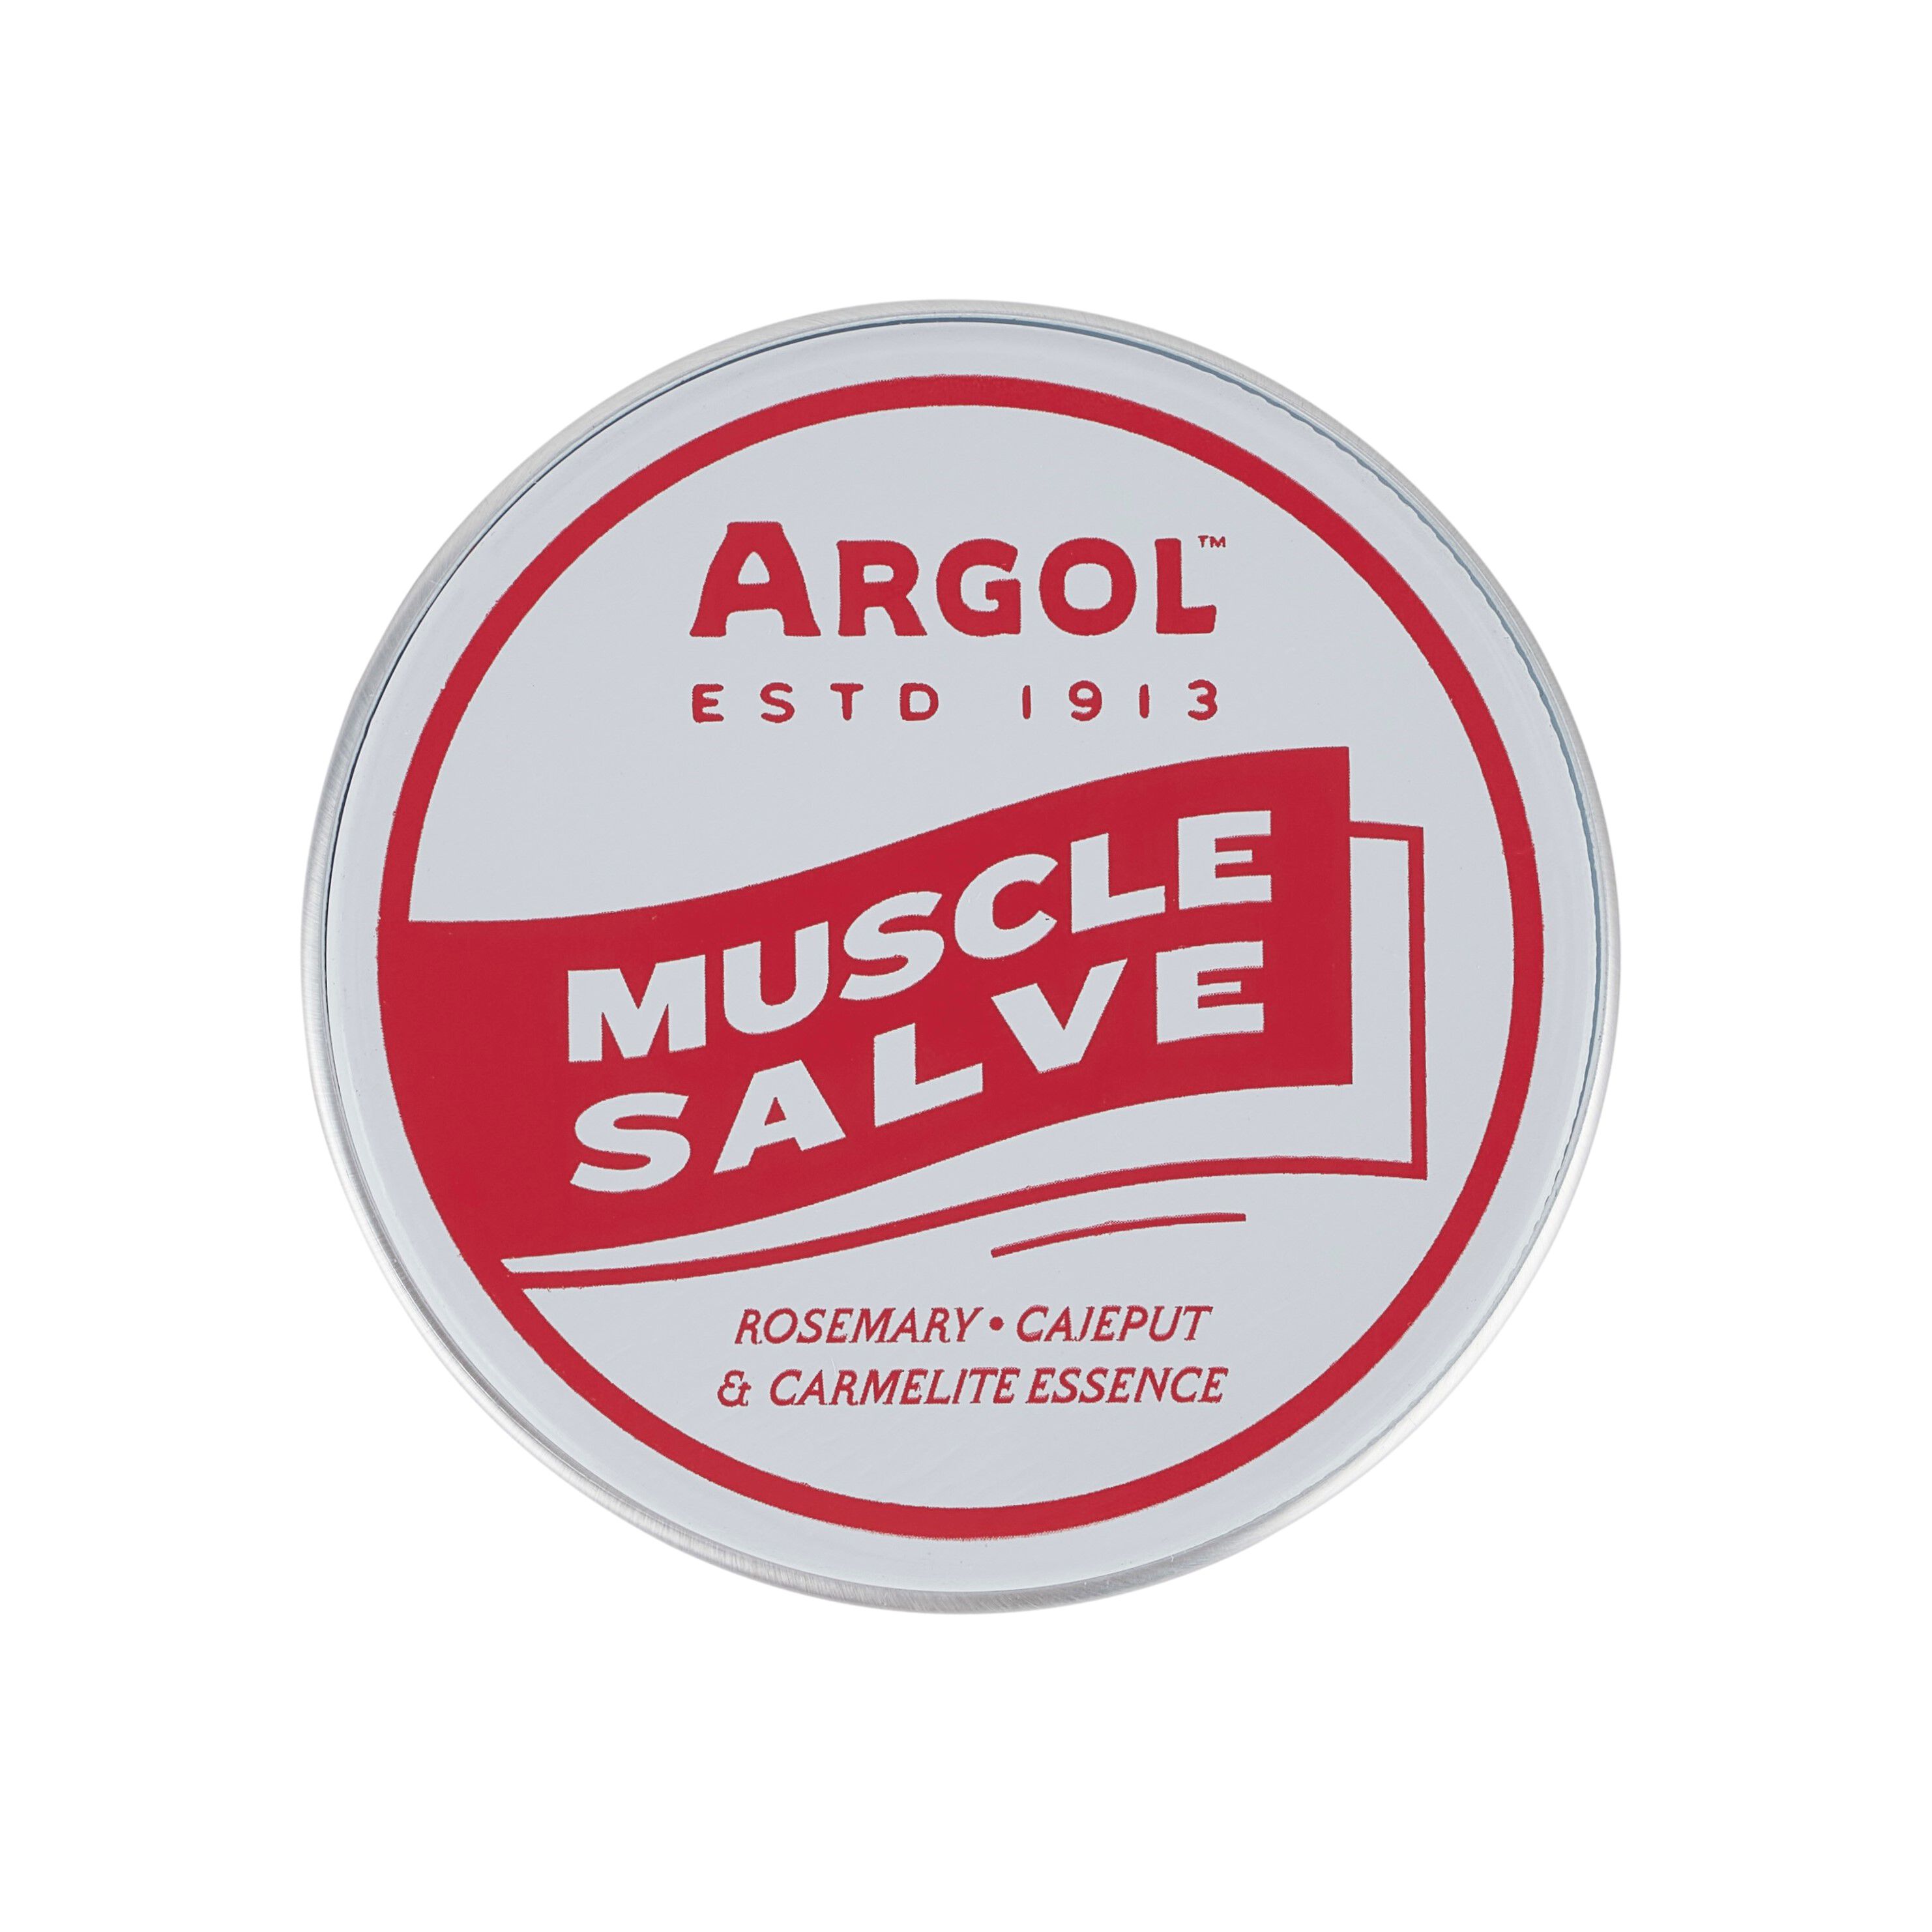 Освежающий и успокаивающий травяной бальзам для растираний и массажа тела Argol Muscle Salve, 40 гр